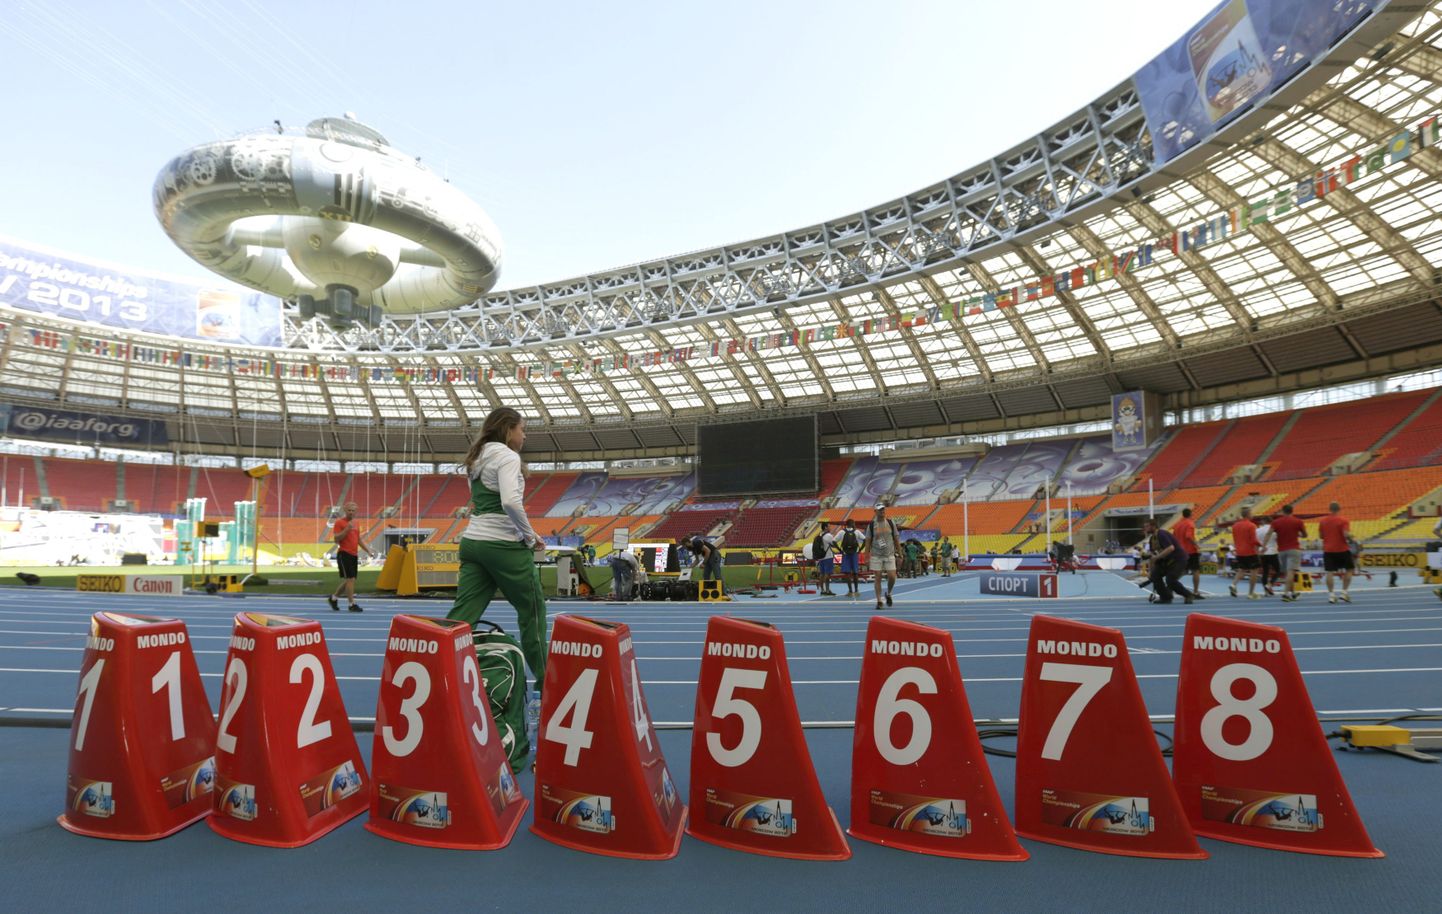 Московский стадион "Лужники" во время проведения ЧМ по легкой атлетике(2013).